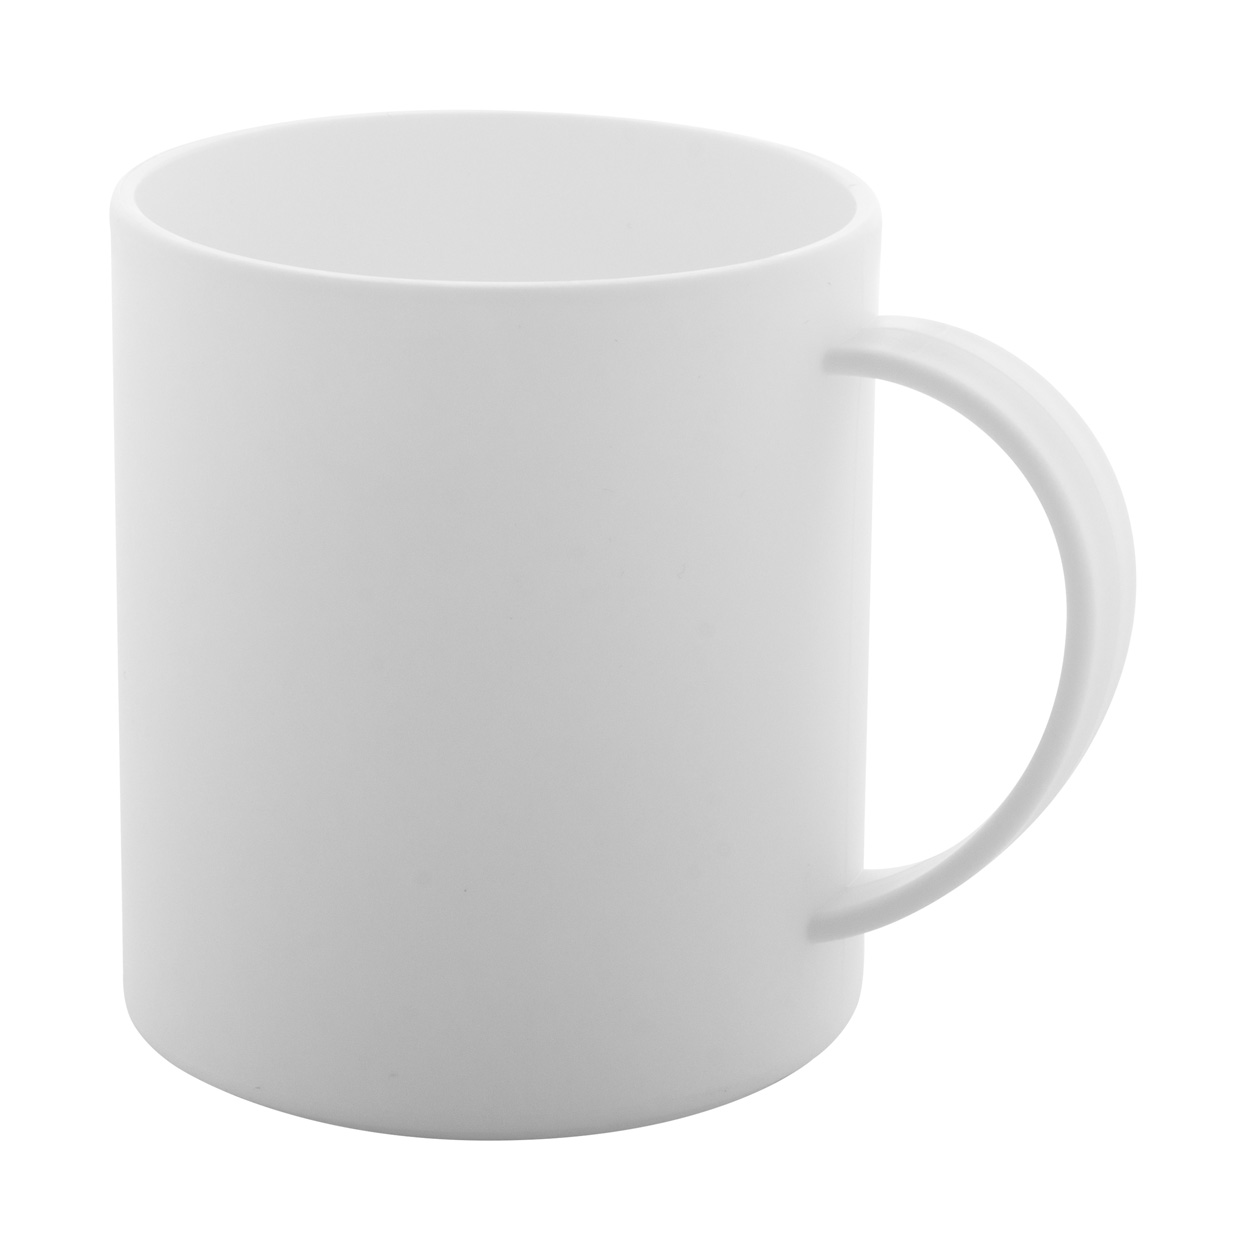 Plantex anti-bacterial mug